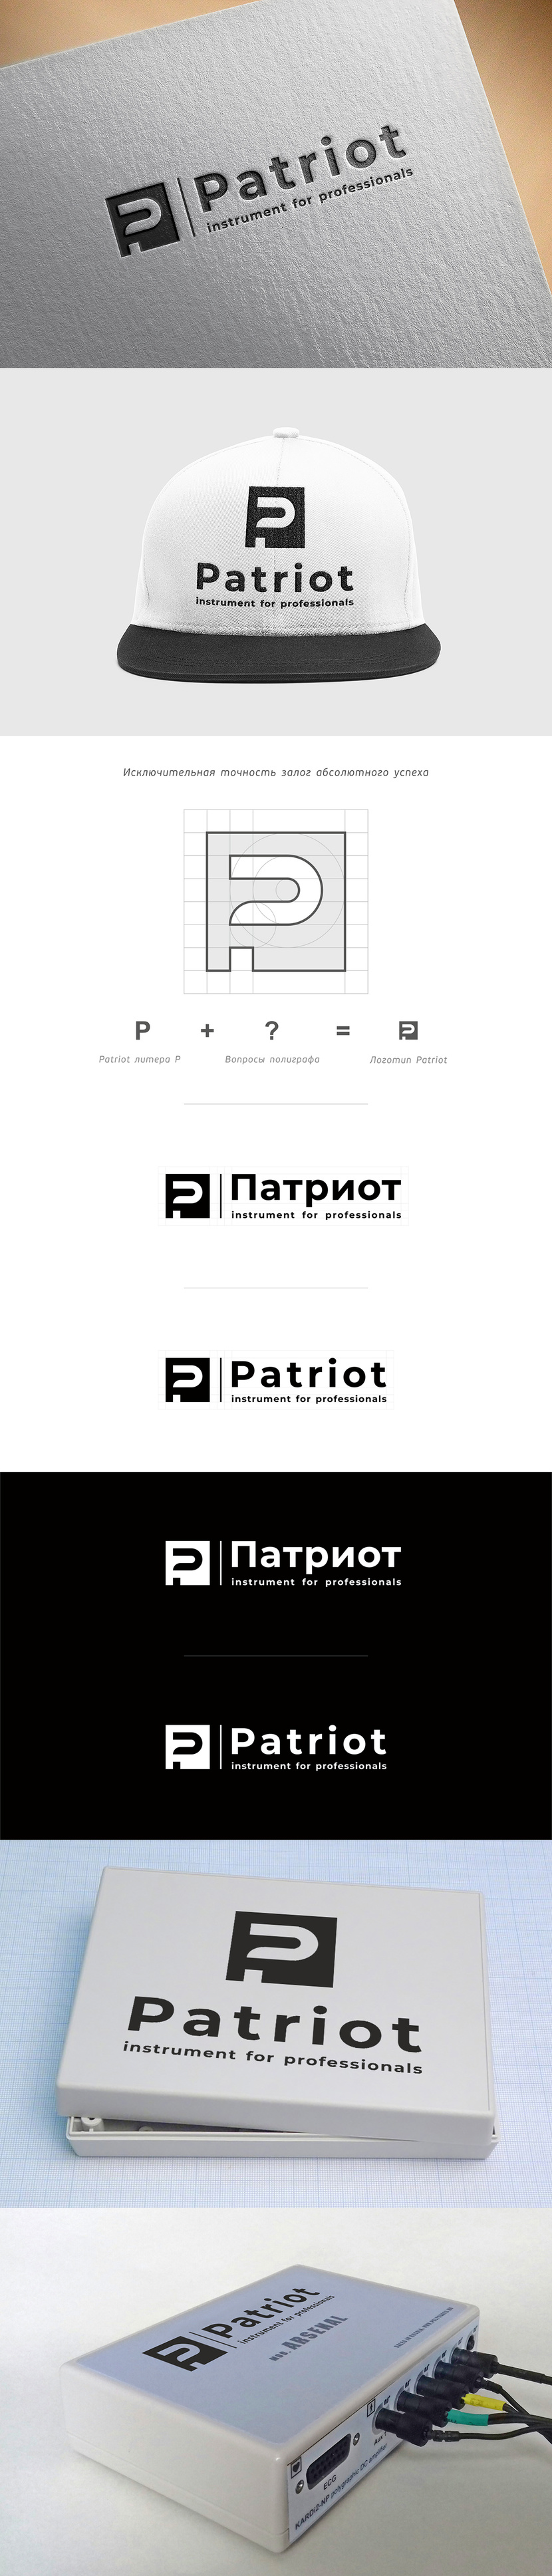 + Patriot - логотип для детектора лжи (полиграфа)